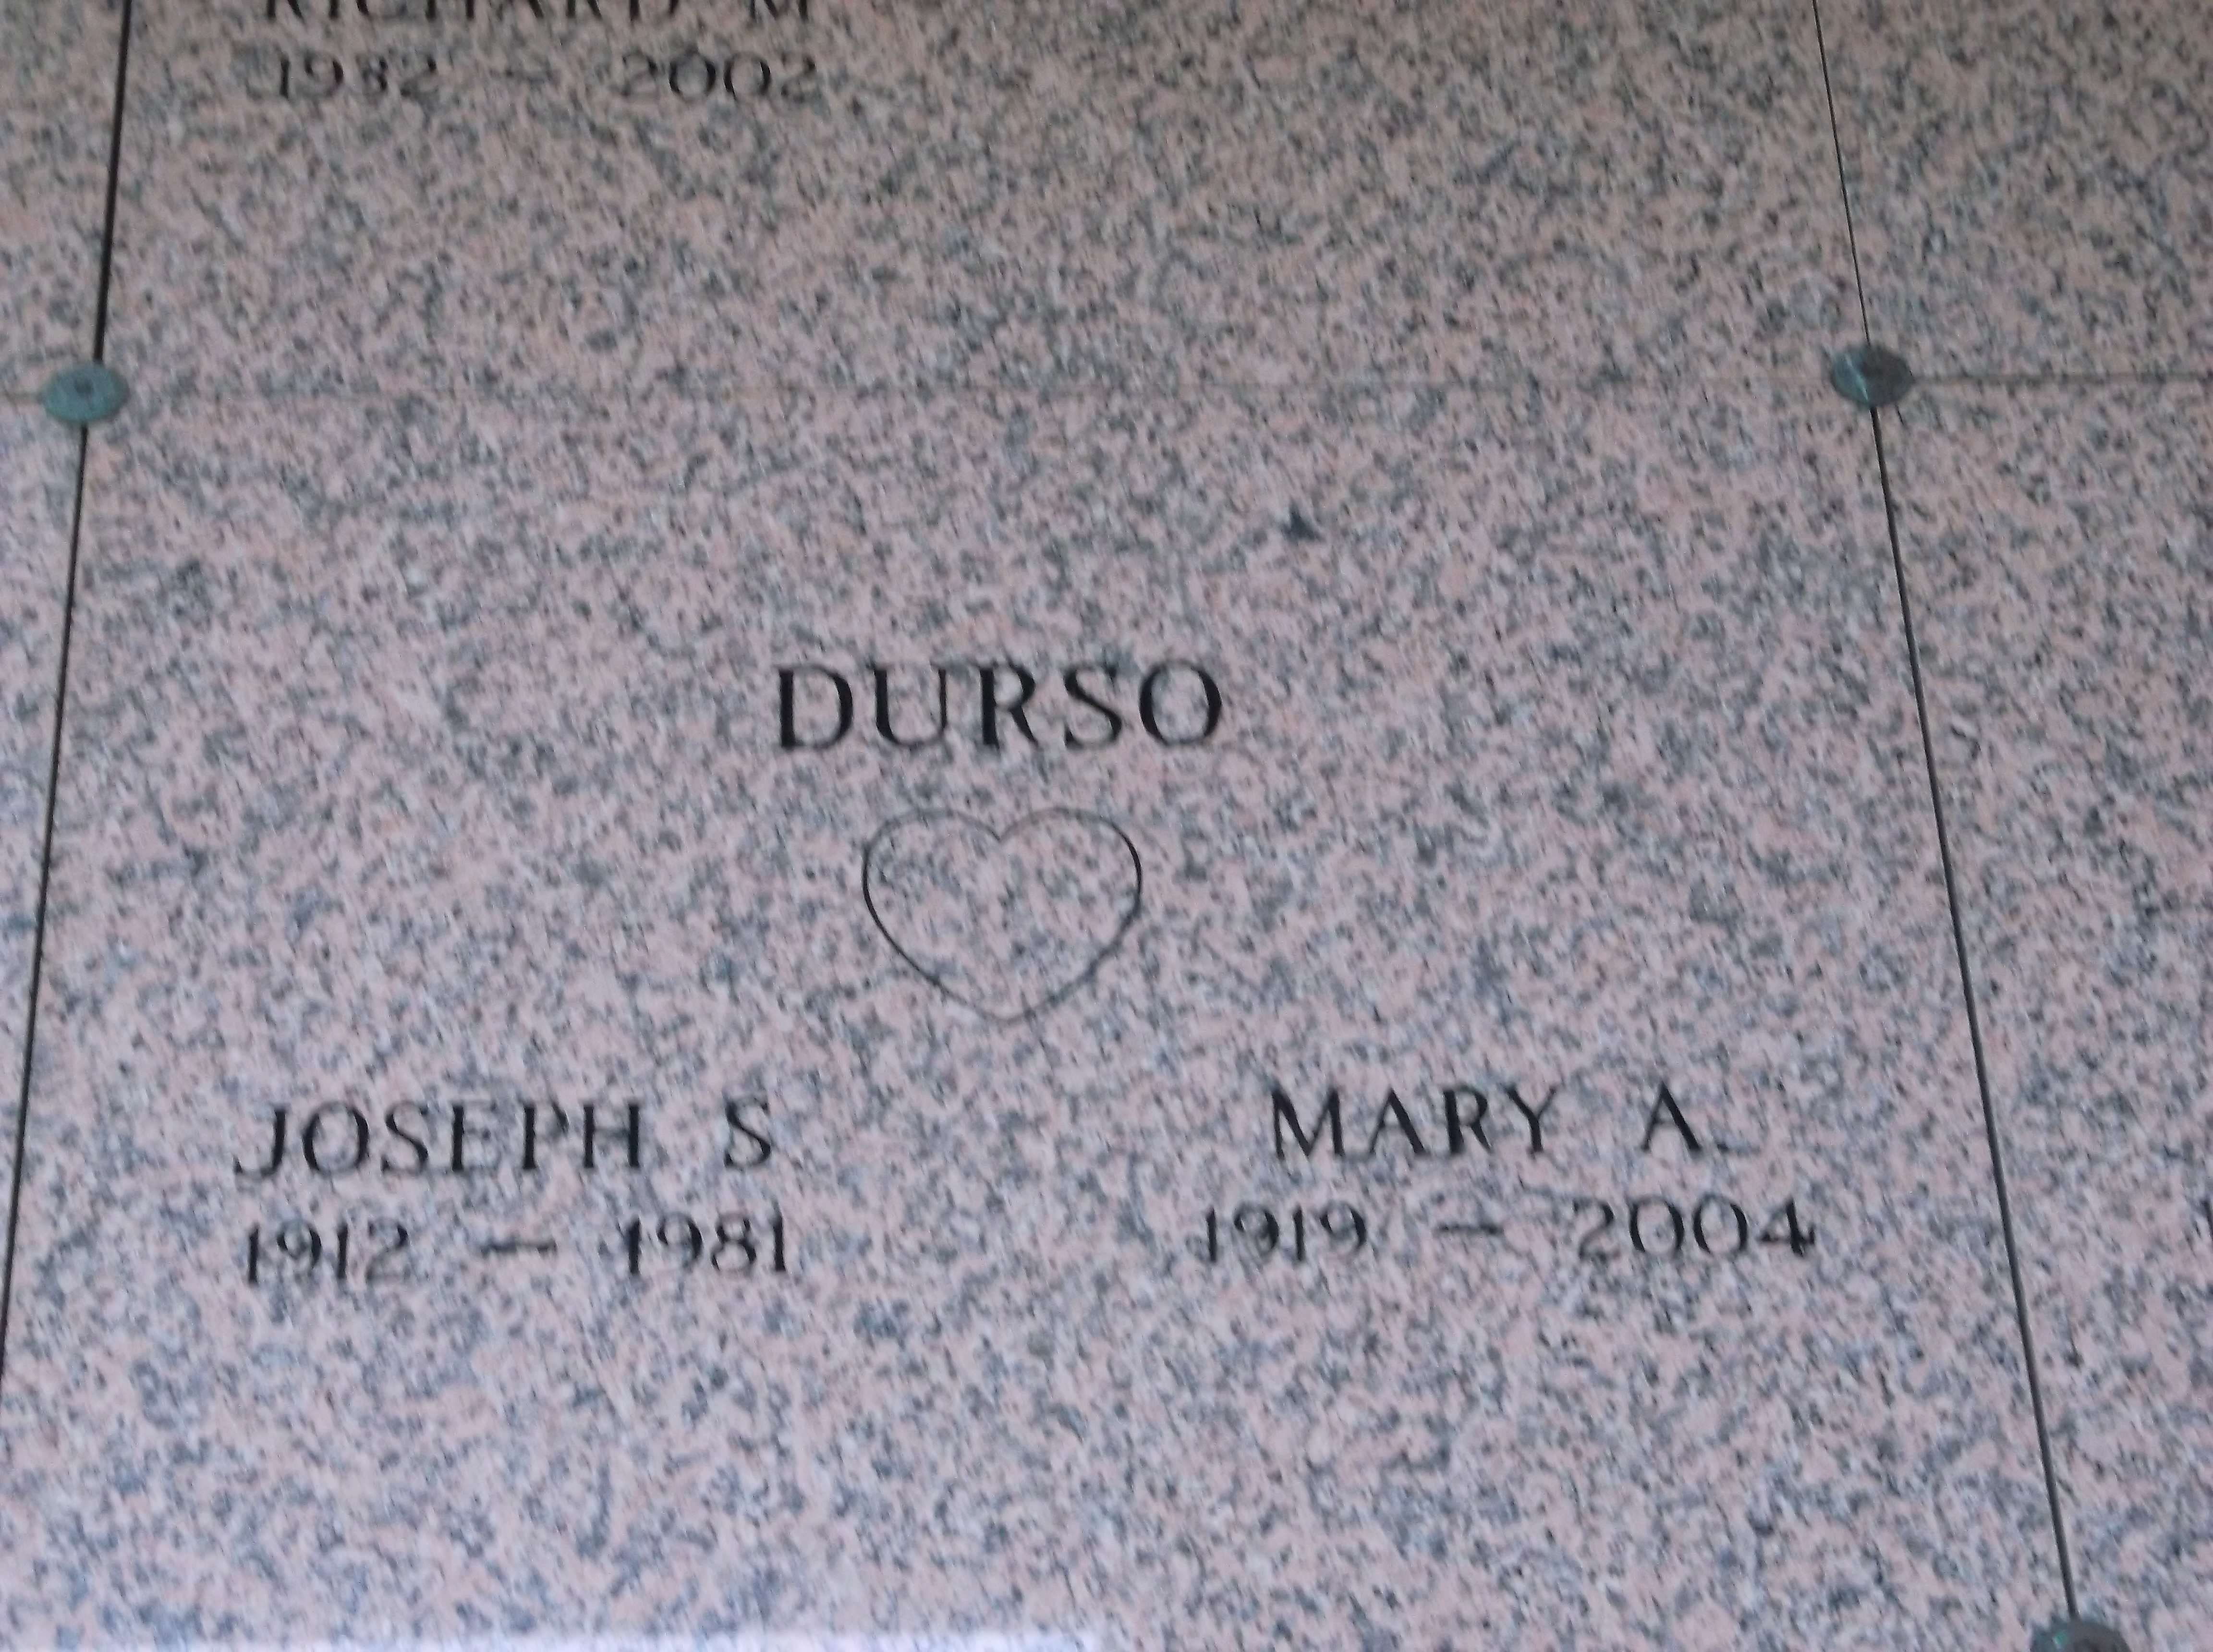 Joseph S Durso